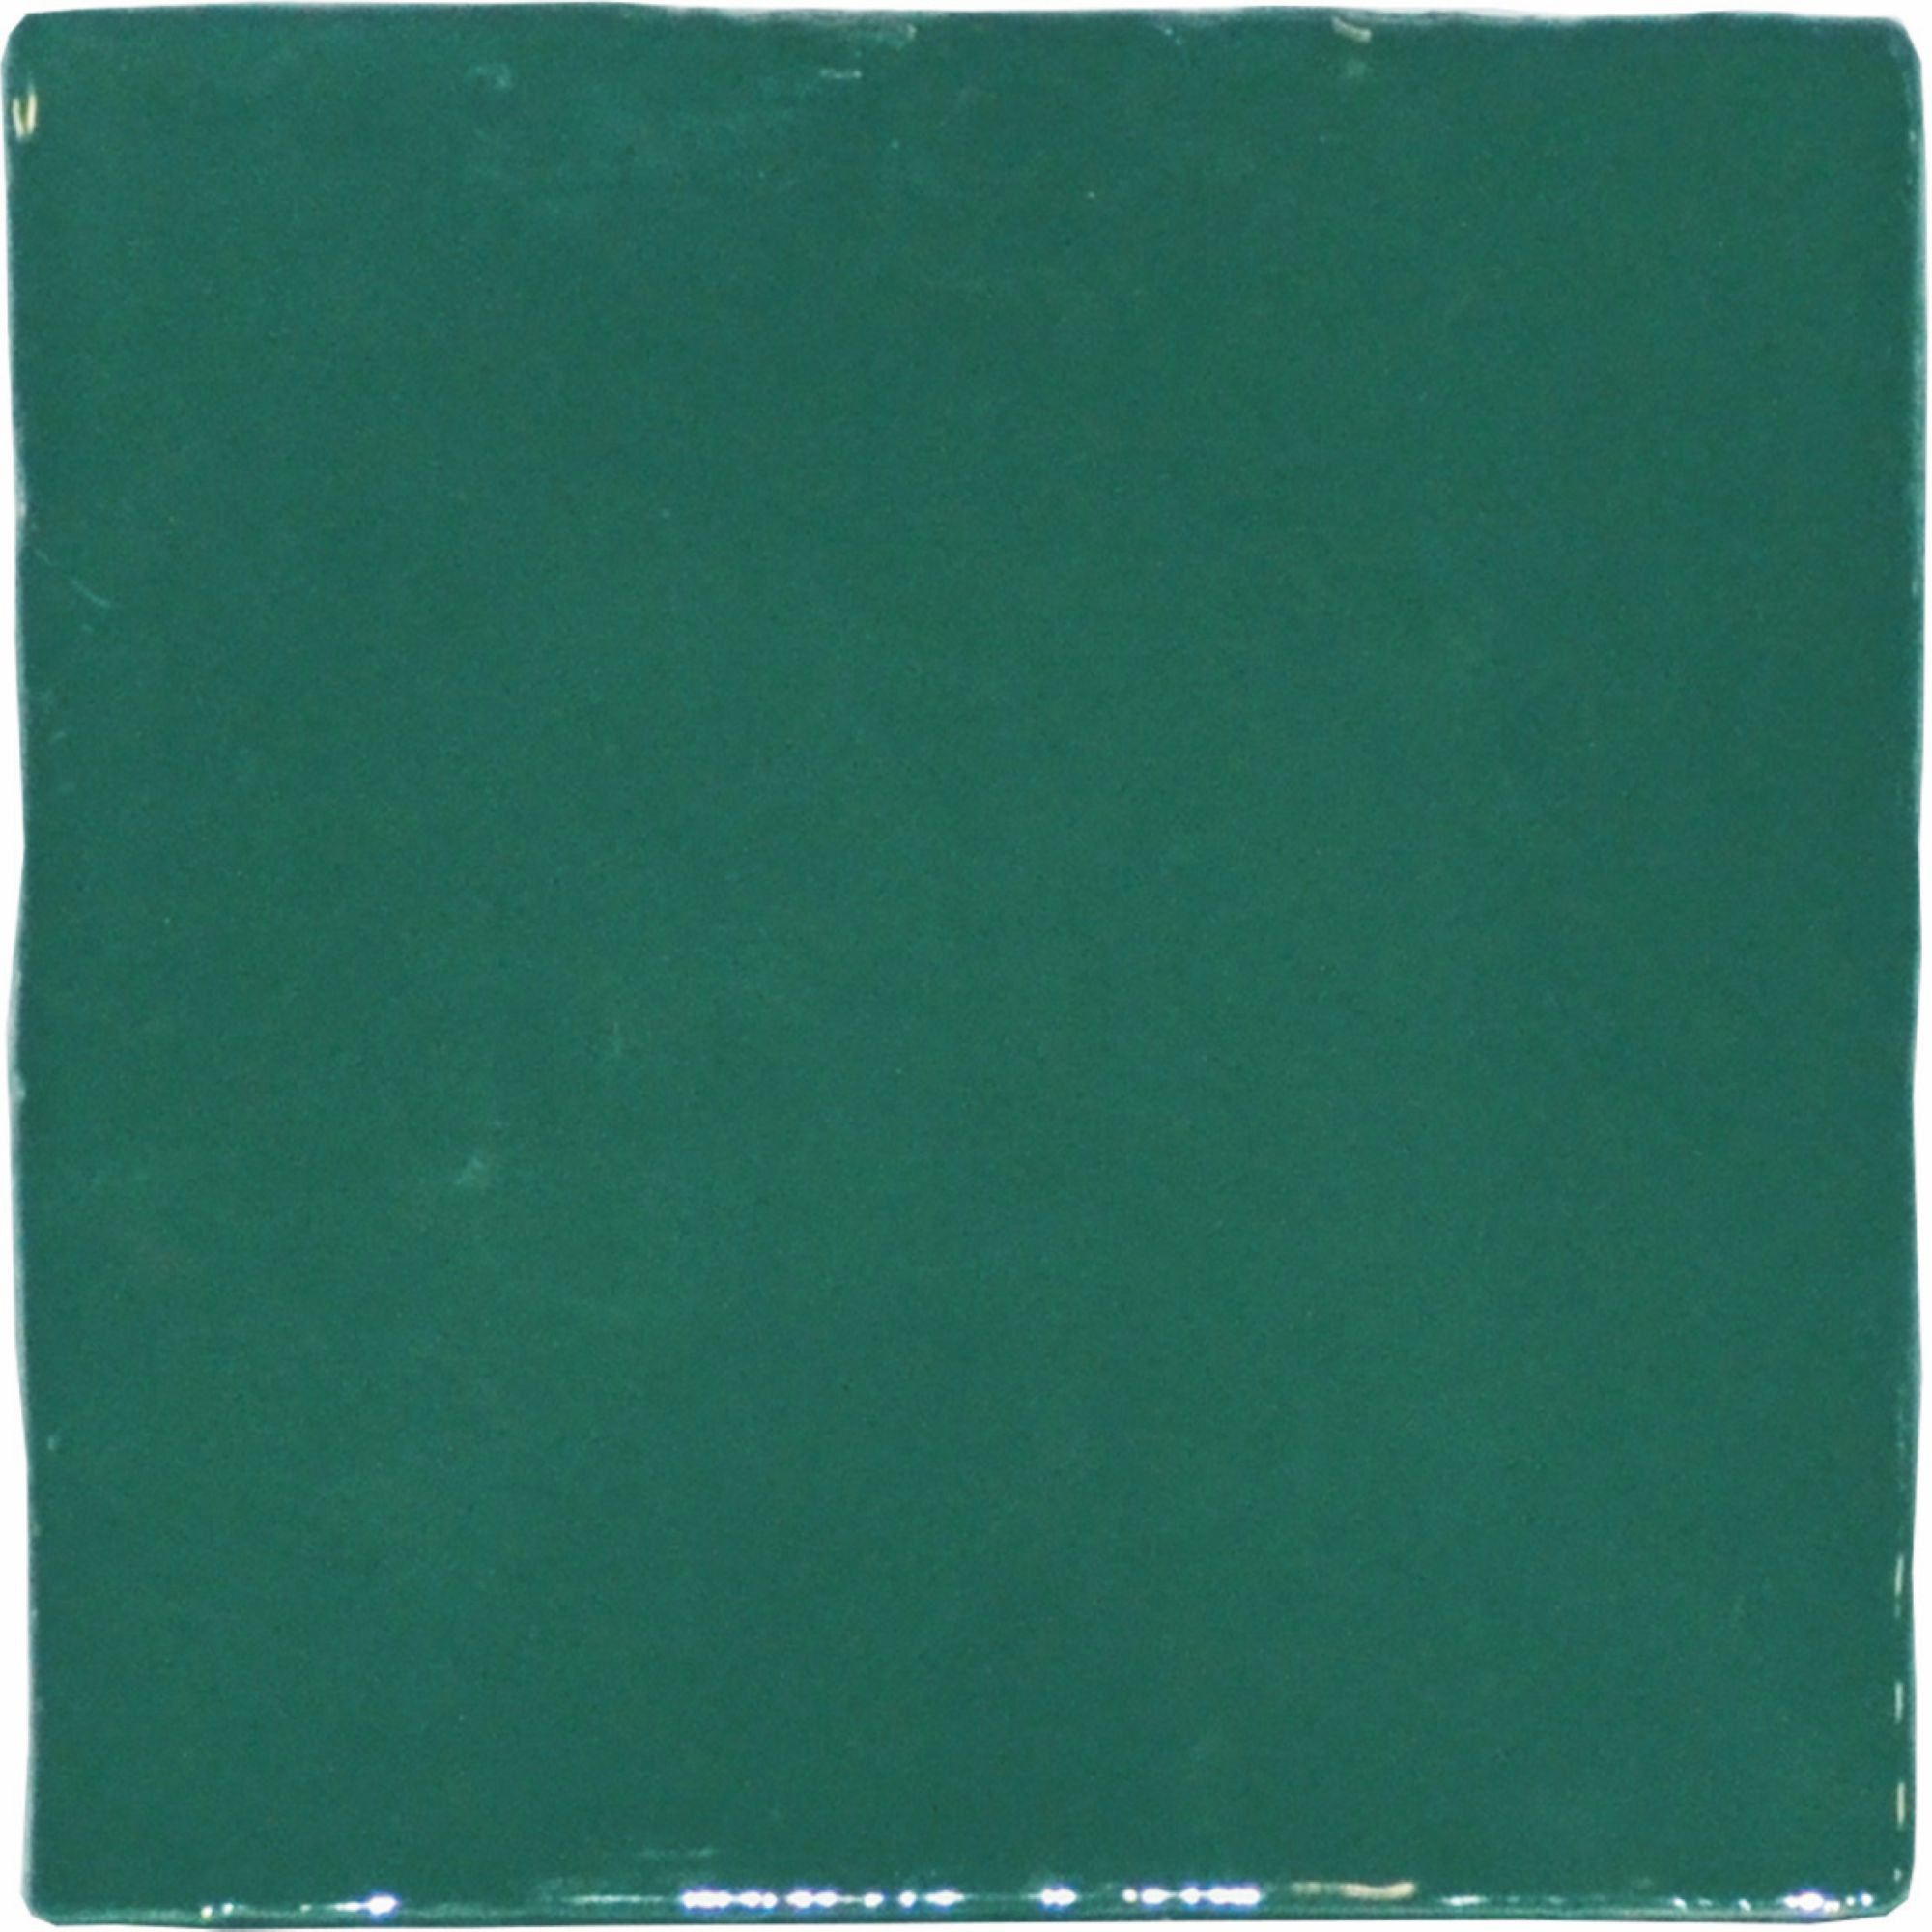 Wandfliese 'Crayon' grün glänzend 13 x 13 cm + product picture